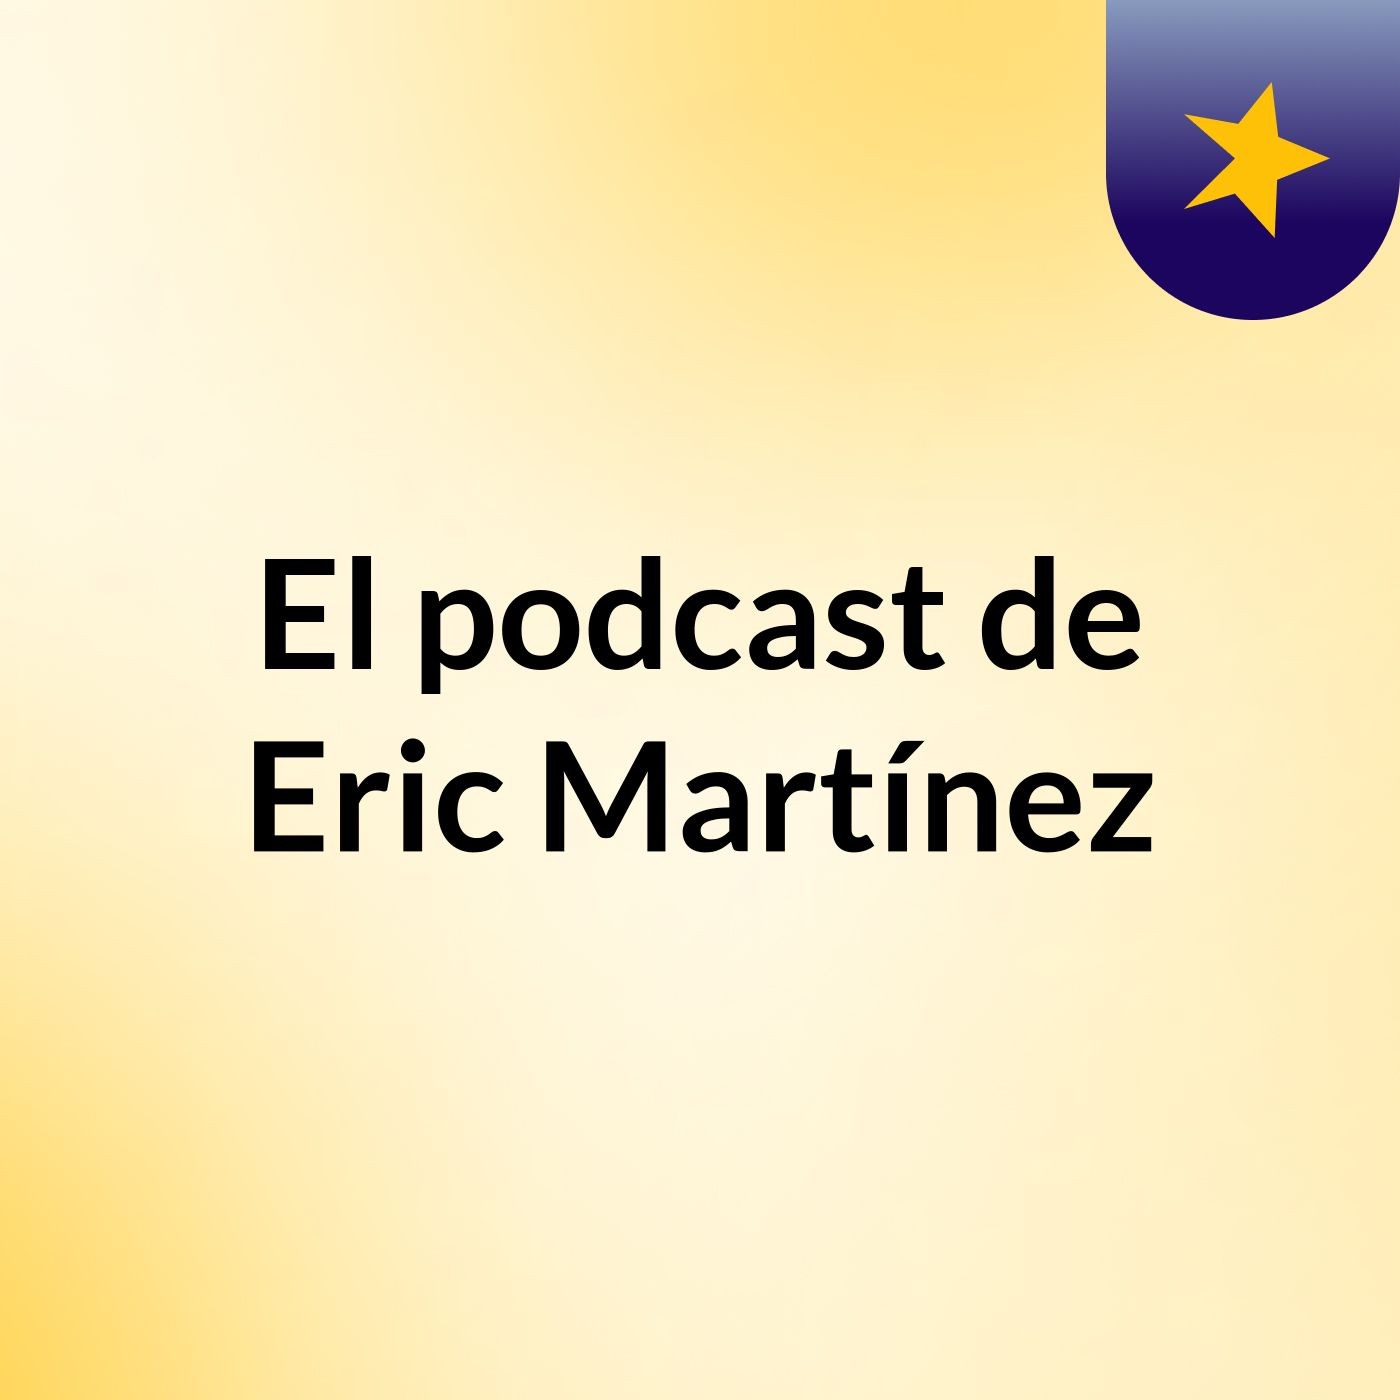 El podcast de Eric Martínez